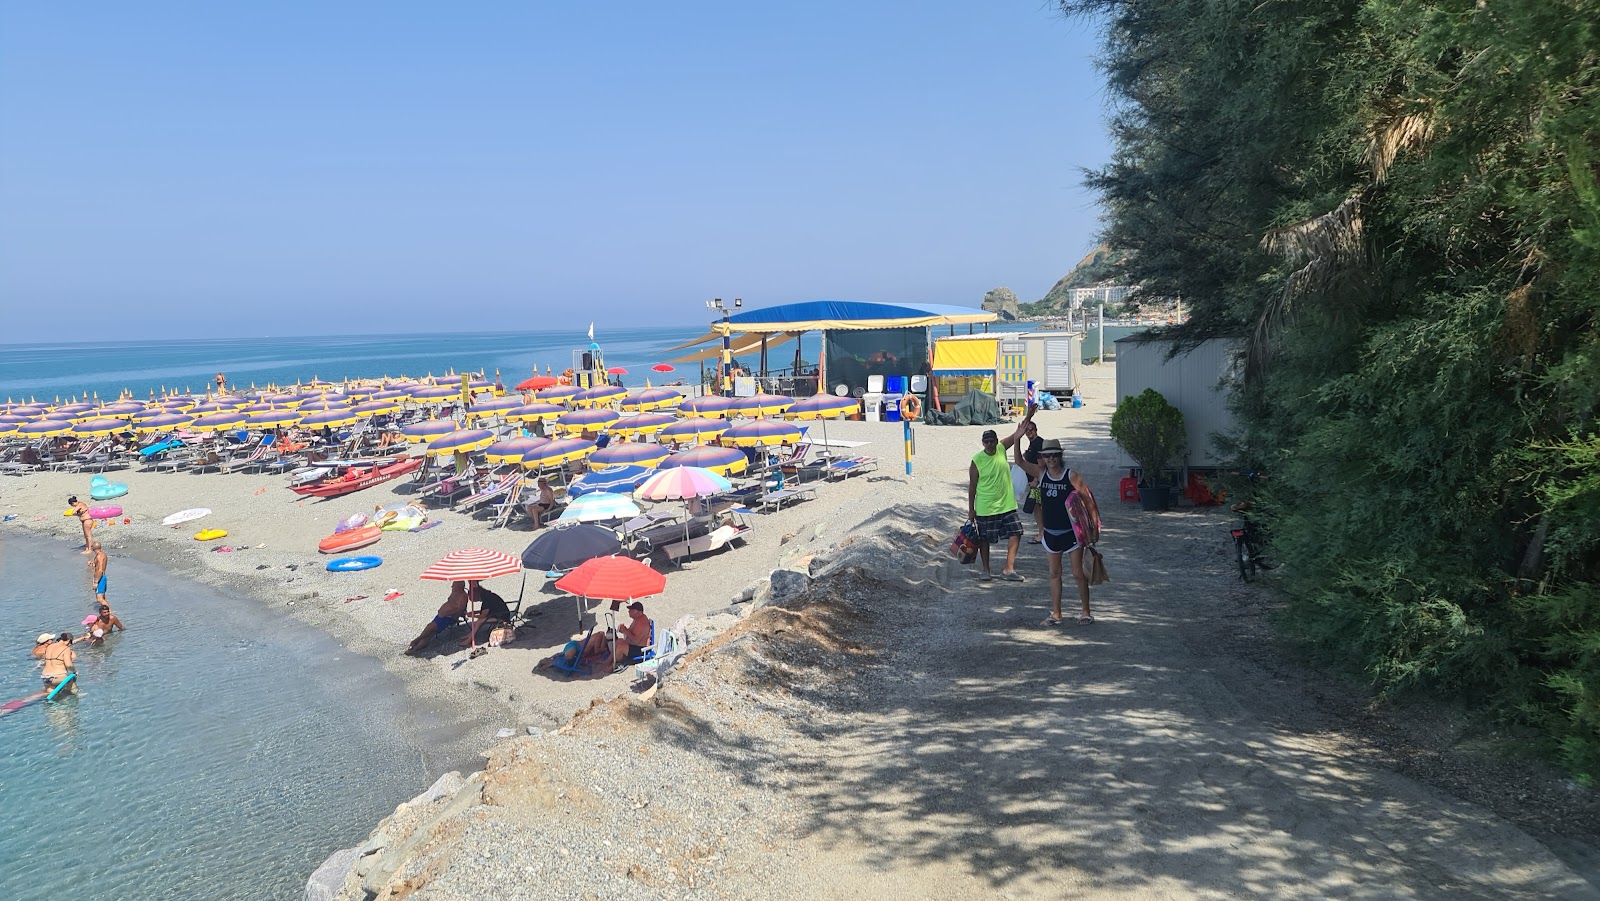 Spiaggia Coreca'in fotoğrafı plaj tatil beldesi alanı